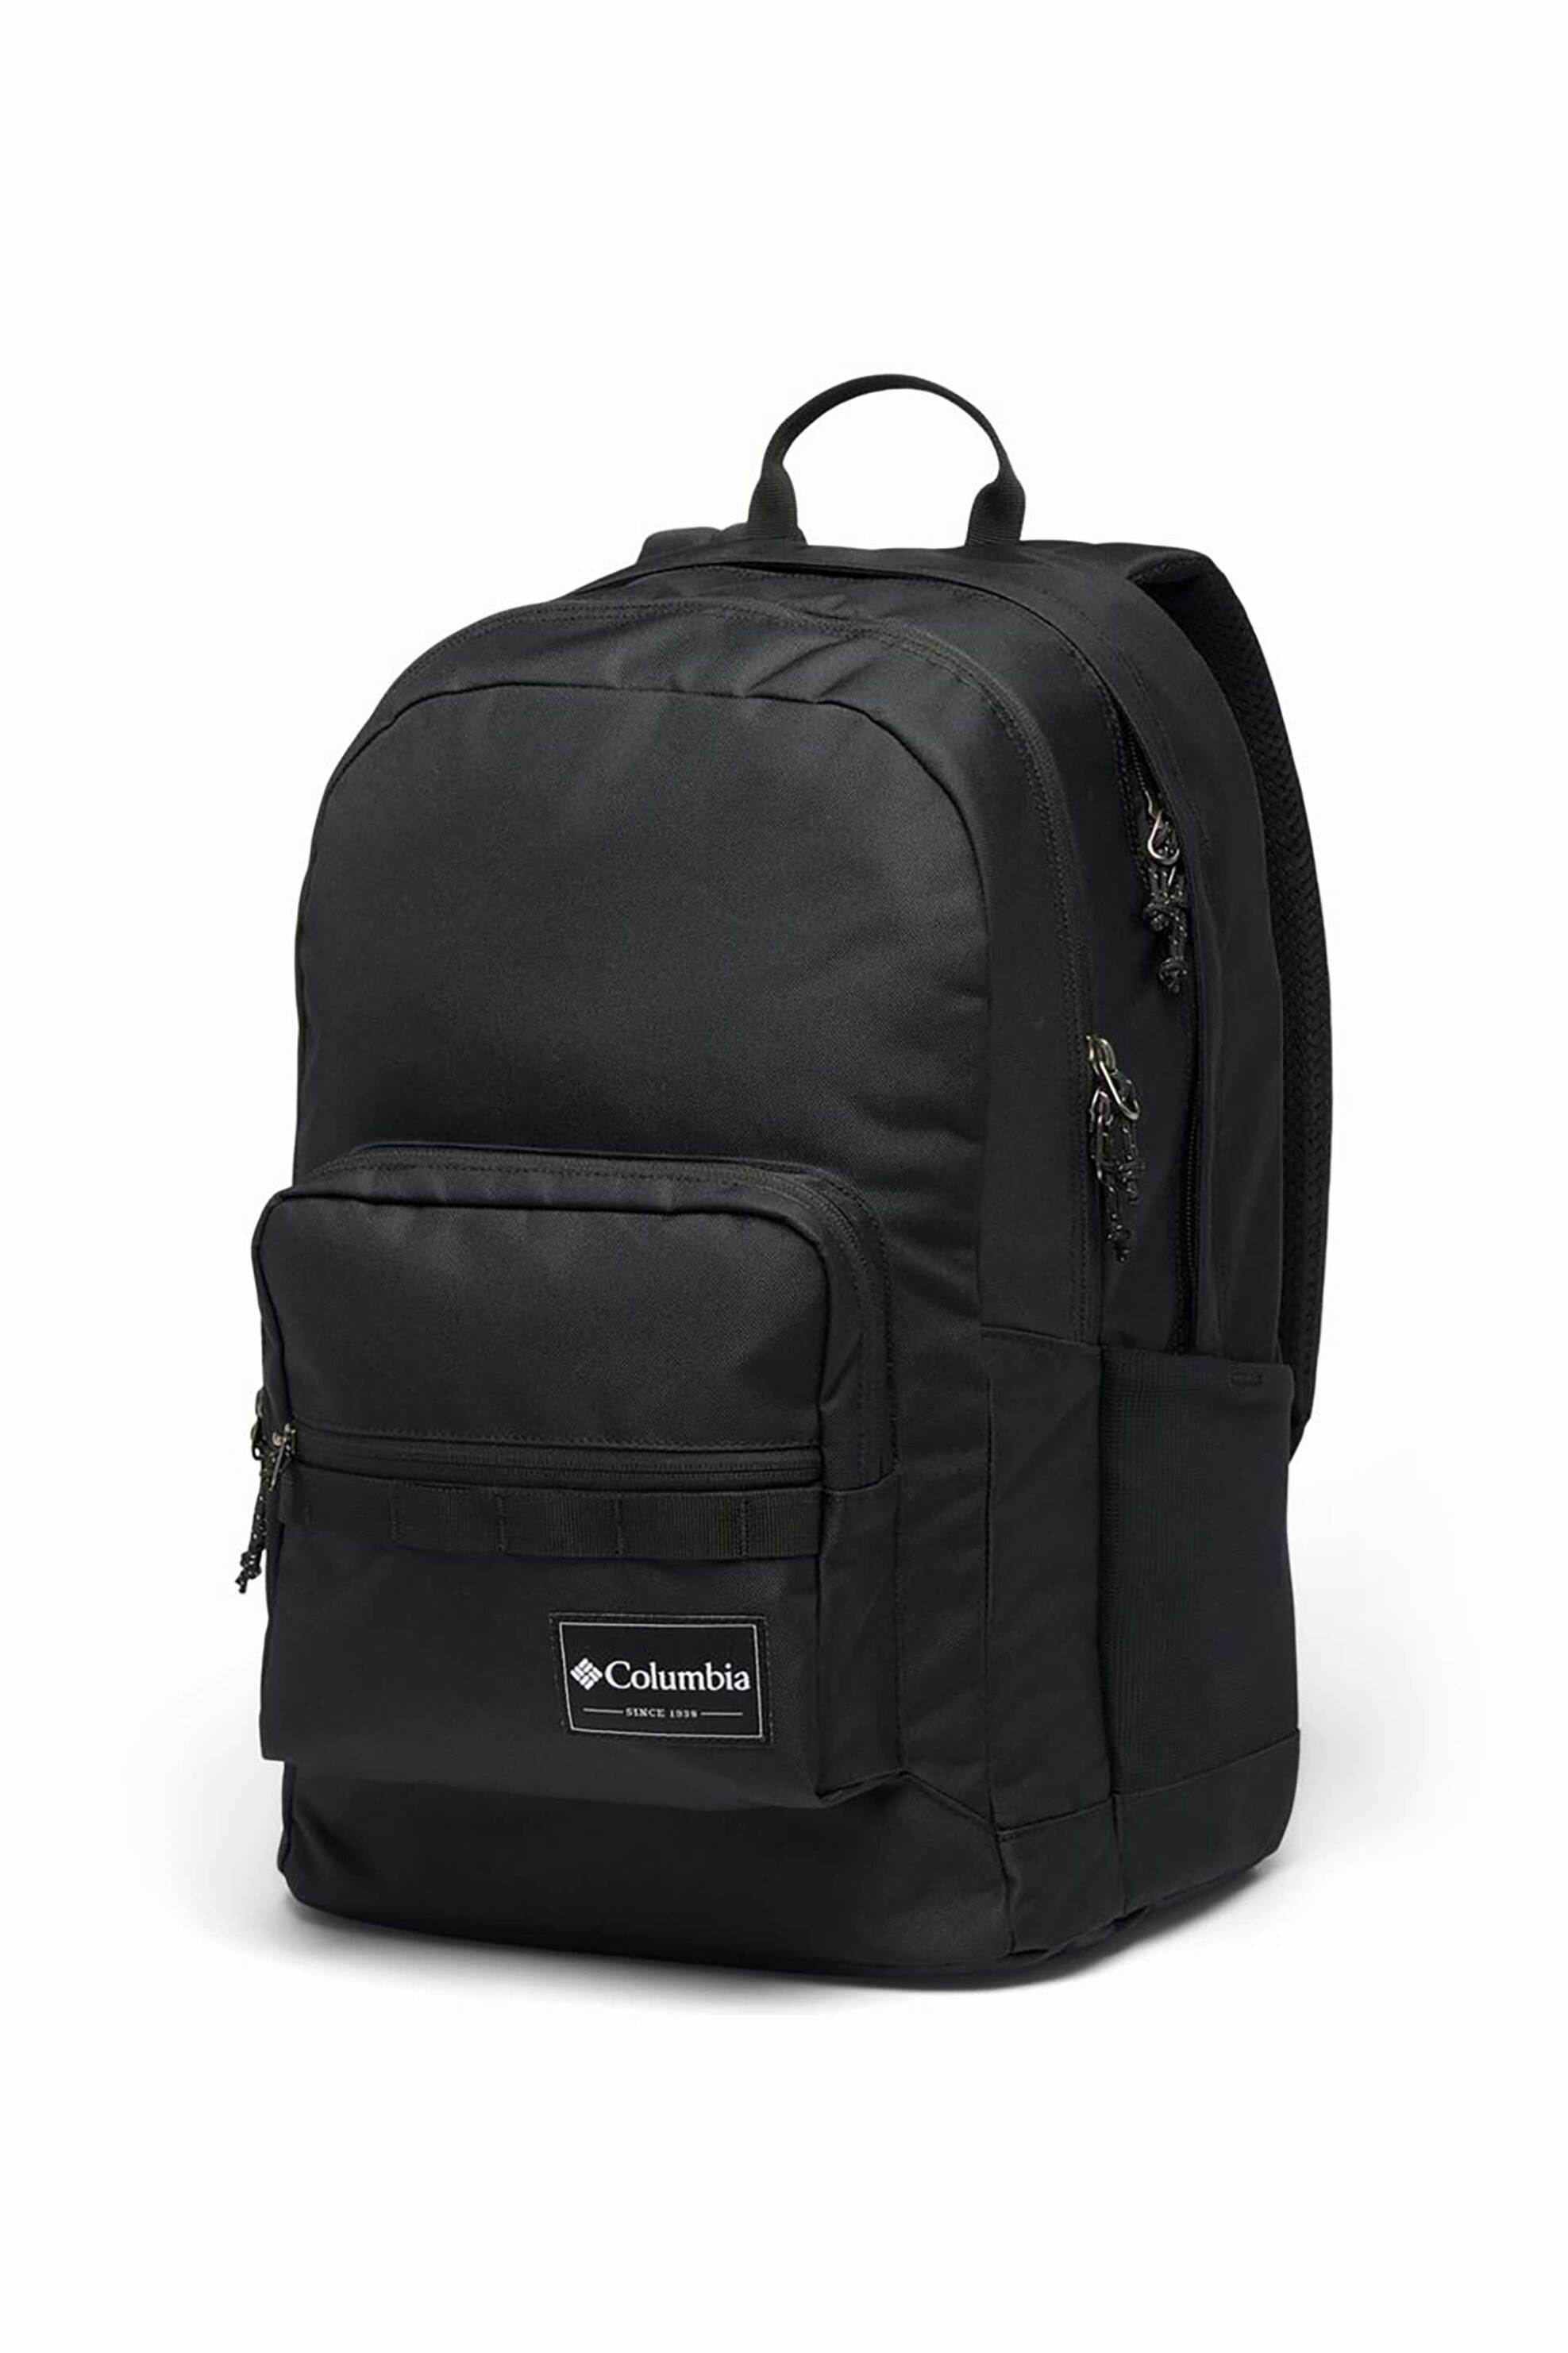 Ανδρική Μόδα > Ανδρικές Τσάντες > Ανδρικά Σακίδια & Backpacks Columbia unisex backpack μονόχρωμο με πολλαπλές θήκες "Zigzag™" - 1890031014TEM Μαύρο